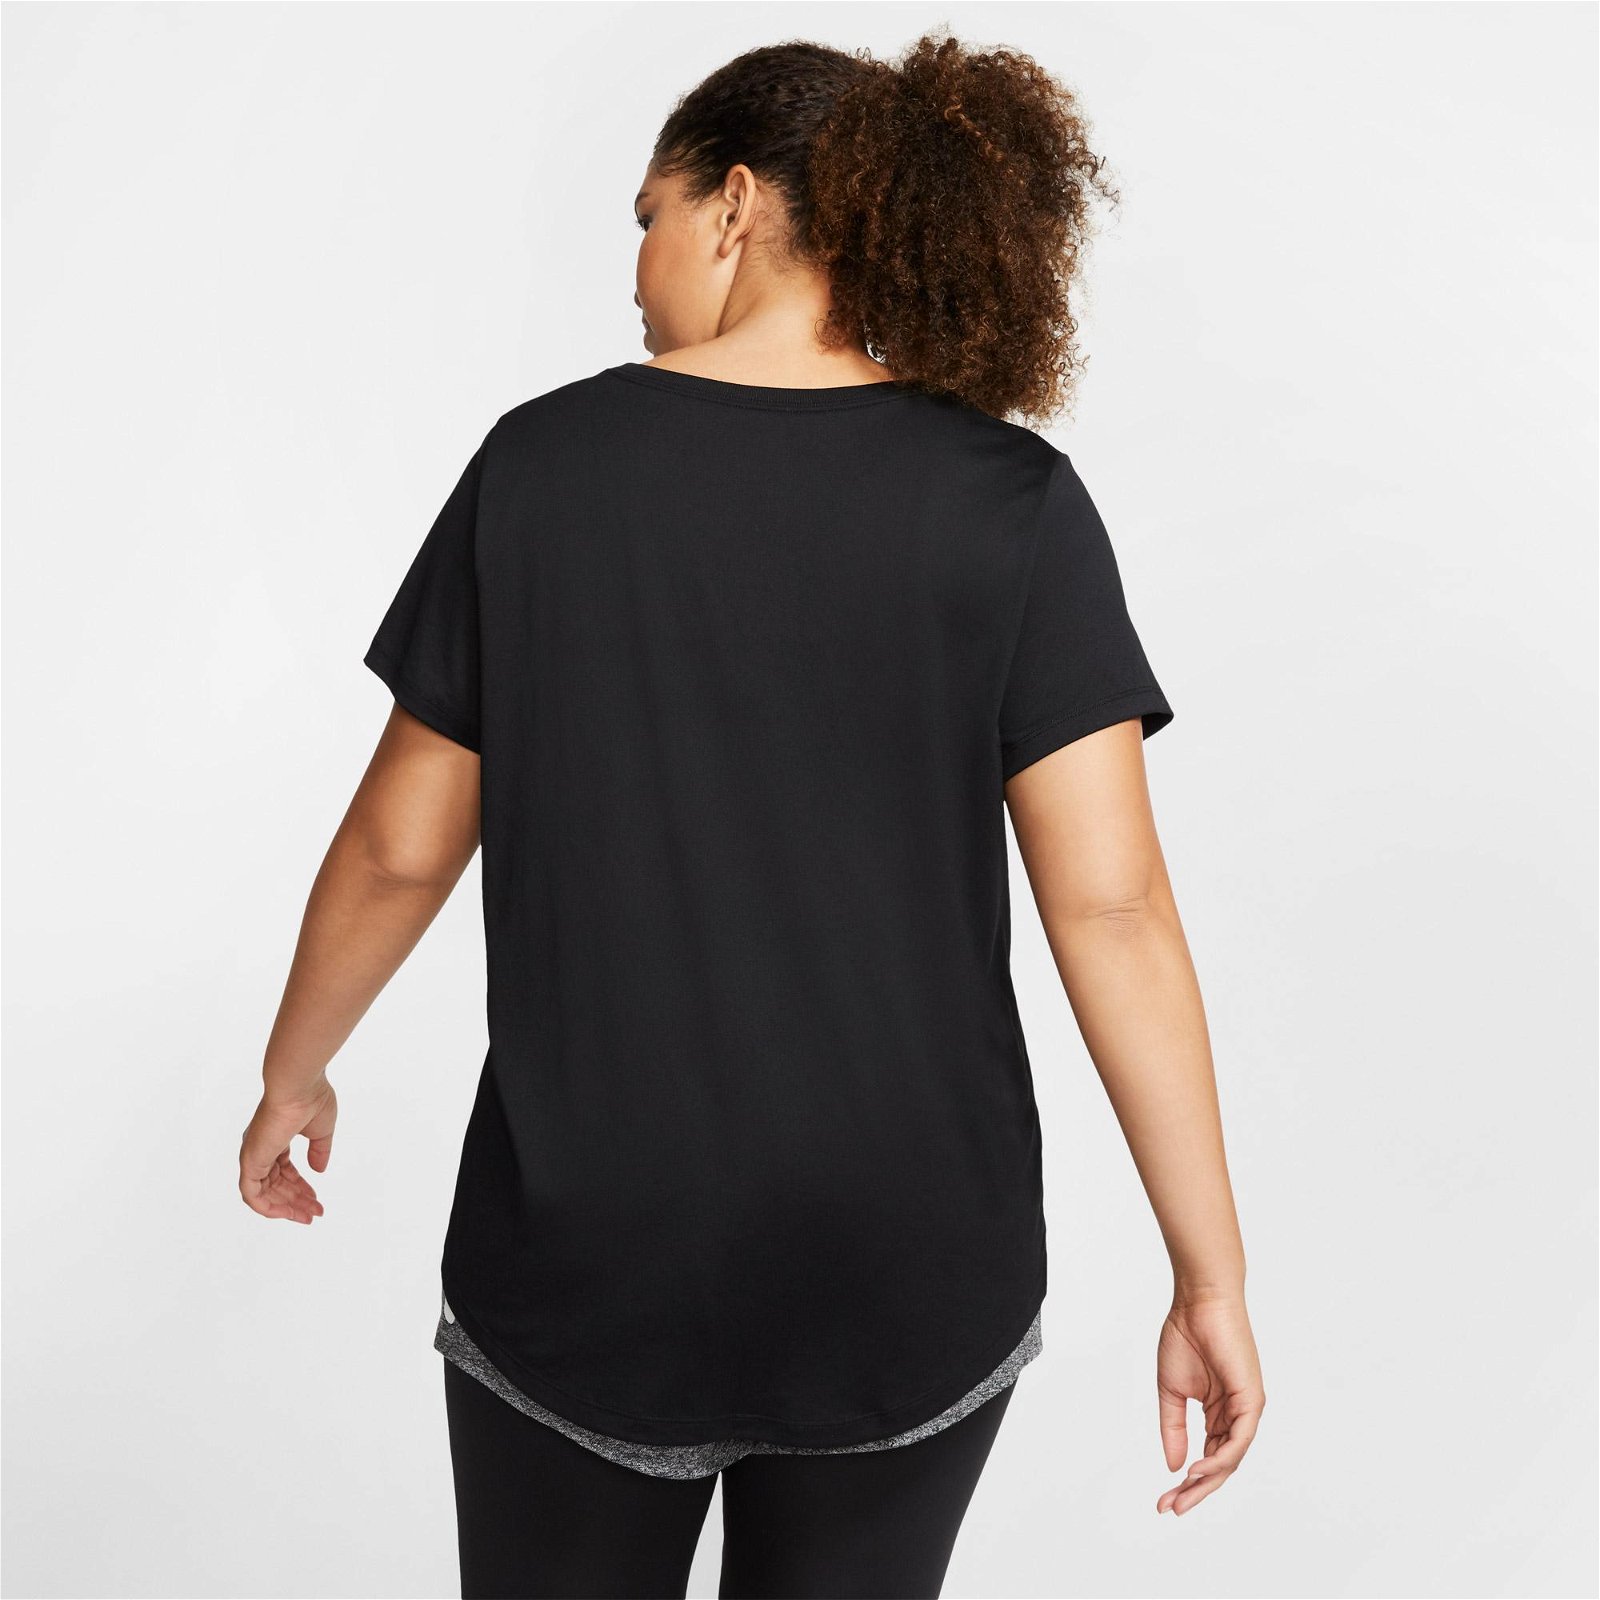 Nike Dry Leg Cre Büyük Beden Kadın Siyah T-Shirt